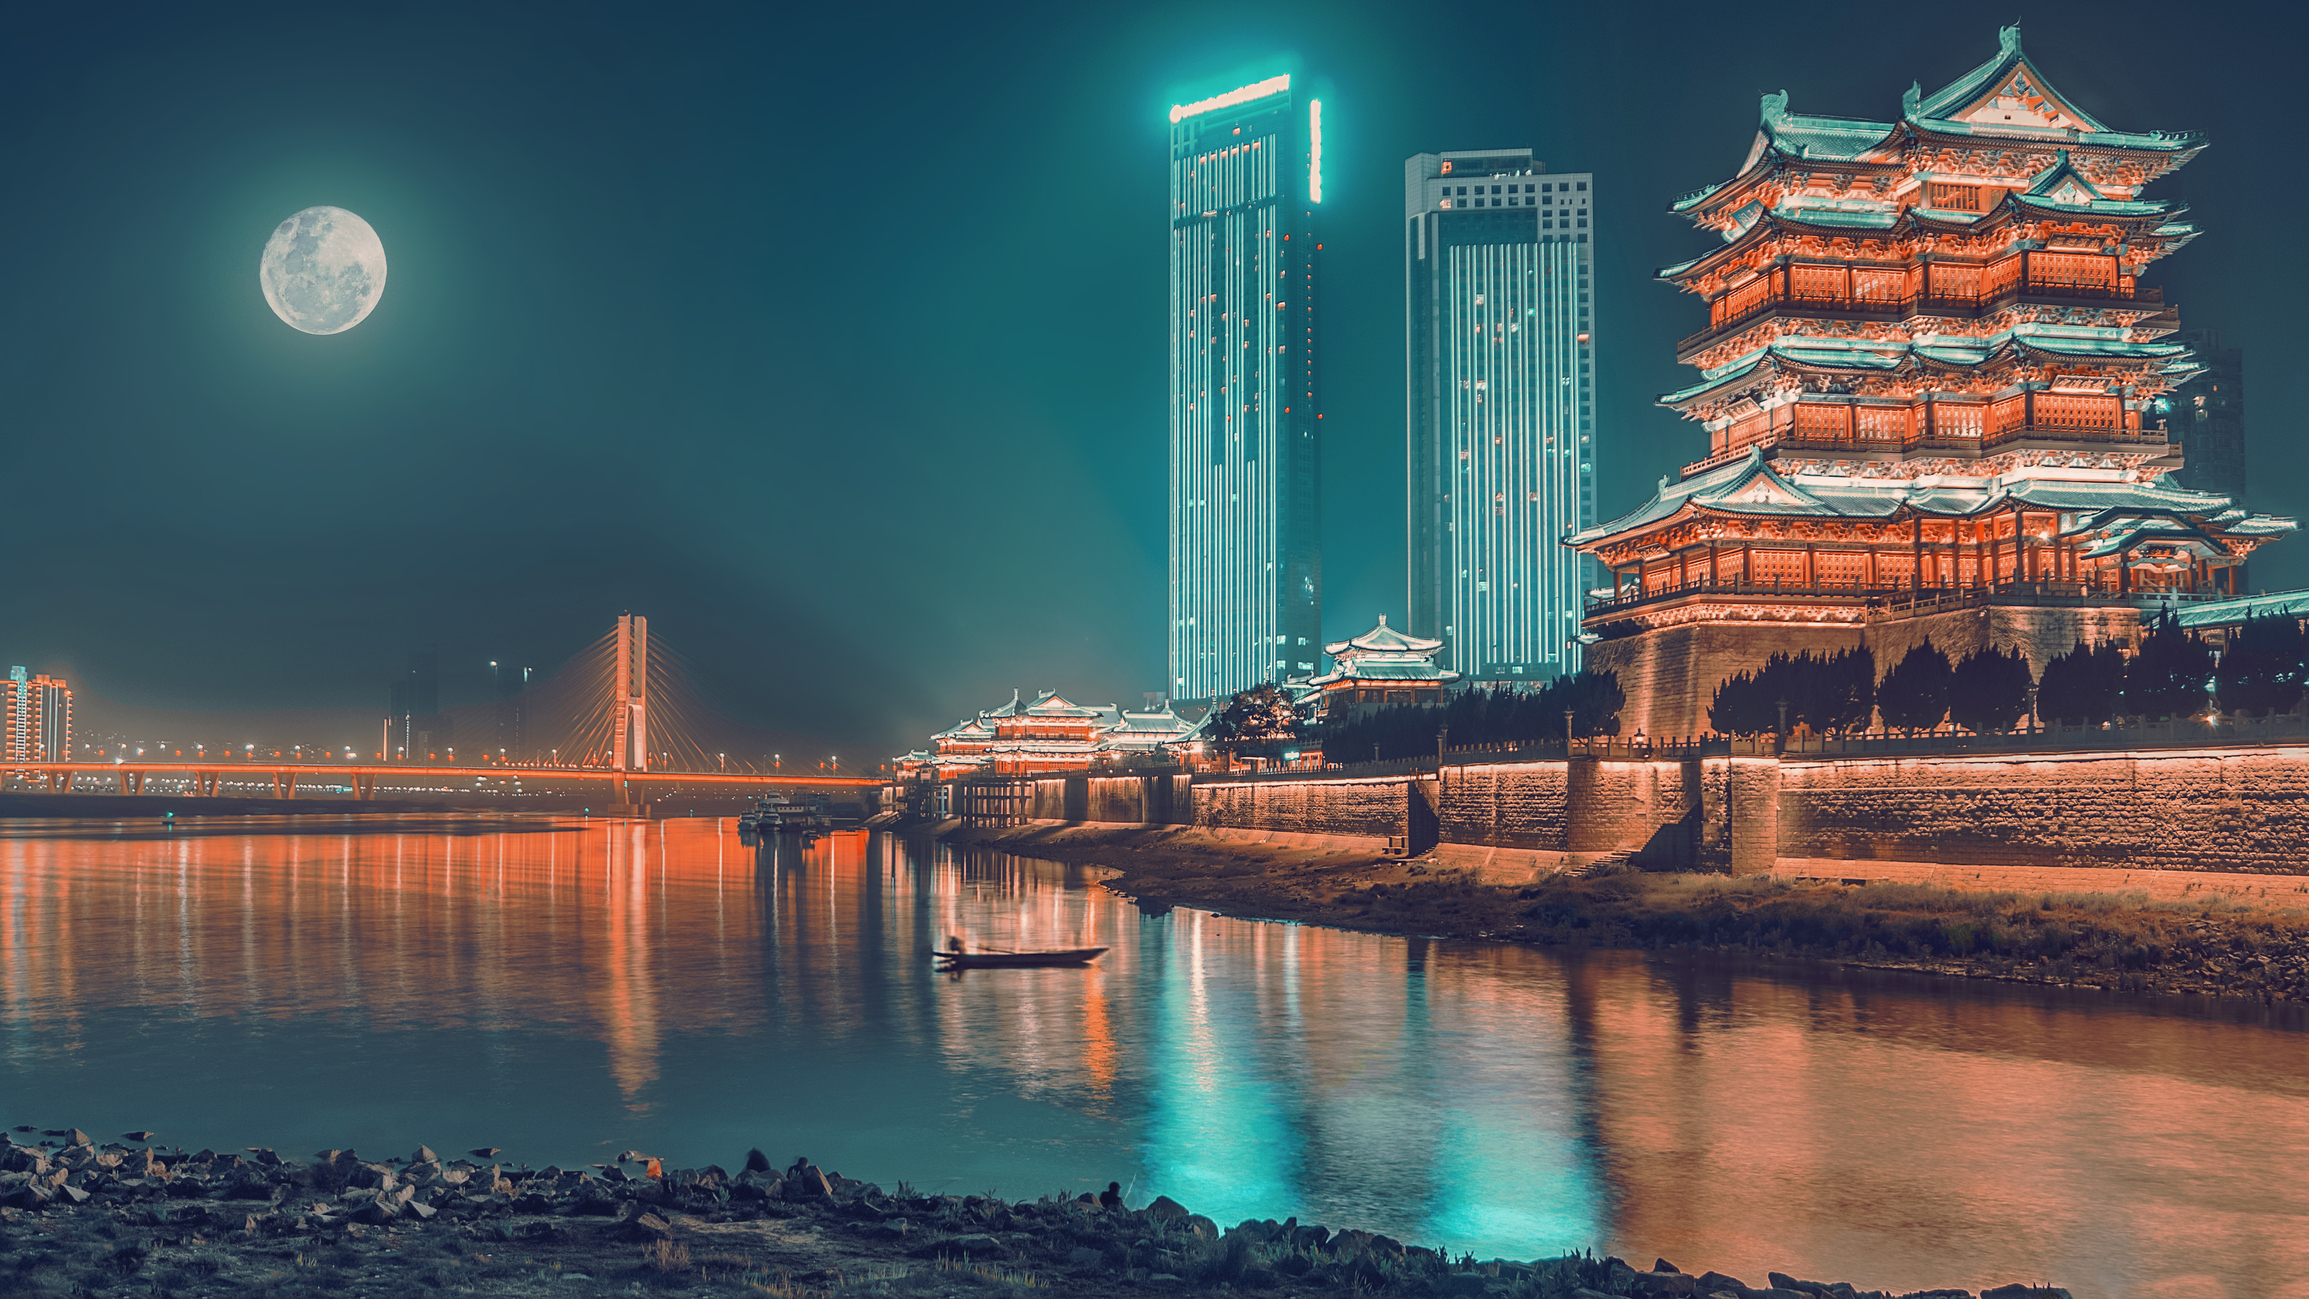 Auf dem Mittherbstfest, Pavillon von Prinz Teng und der Brücke hinüber zum Jangtse Fluss unter dem Mond in der Nacht, chinesisches Trainingsfestival und Gebäude